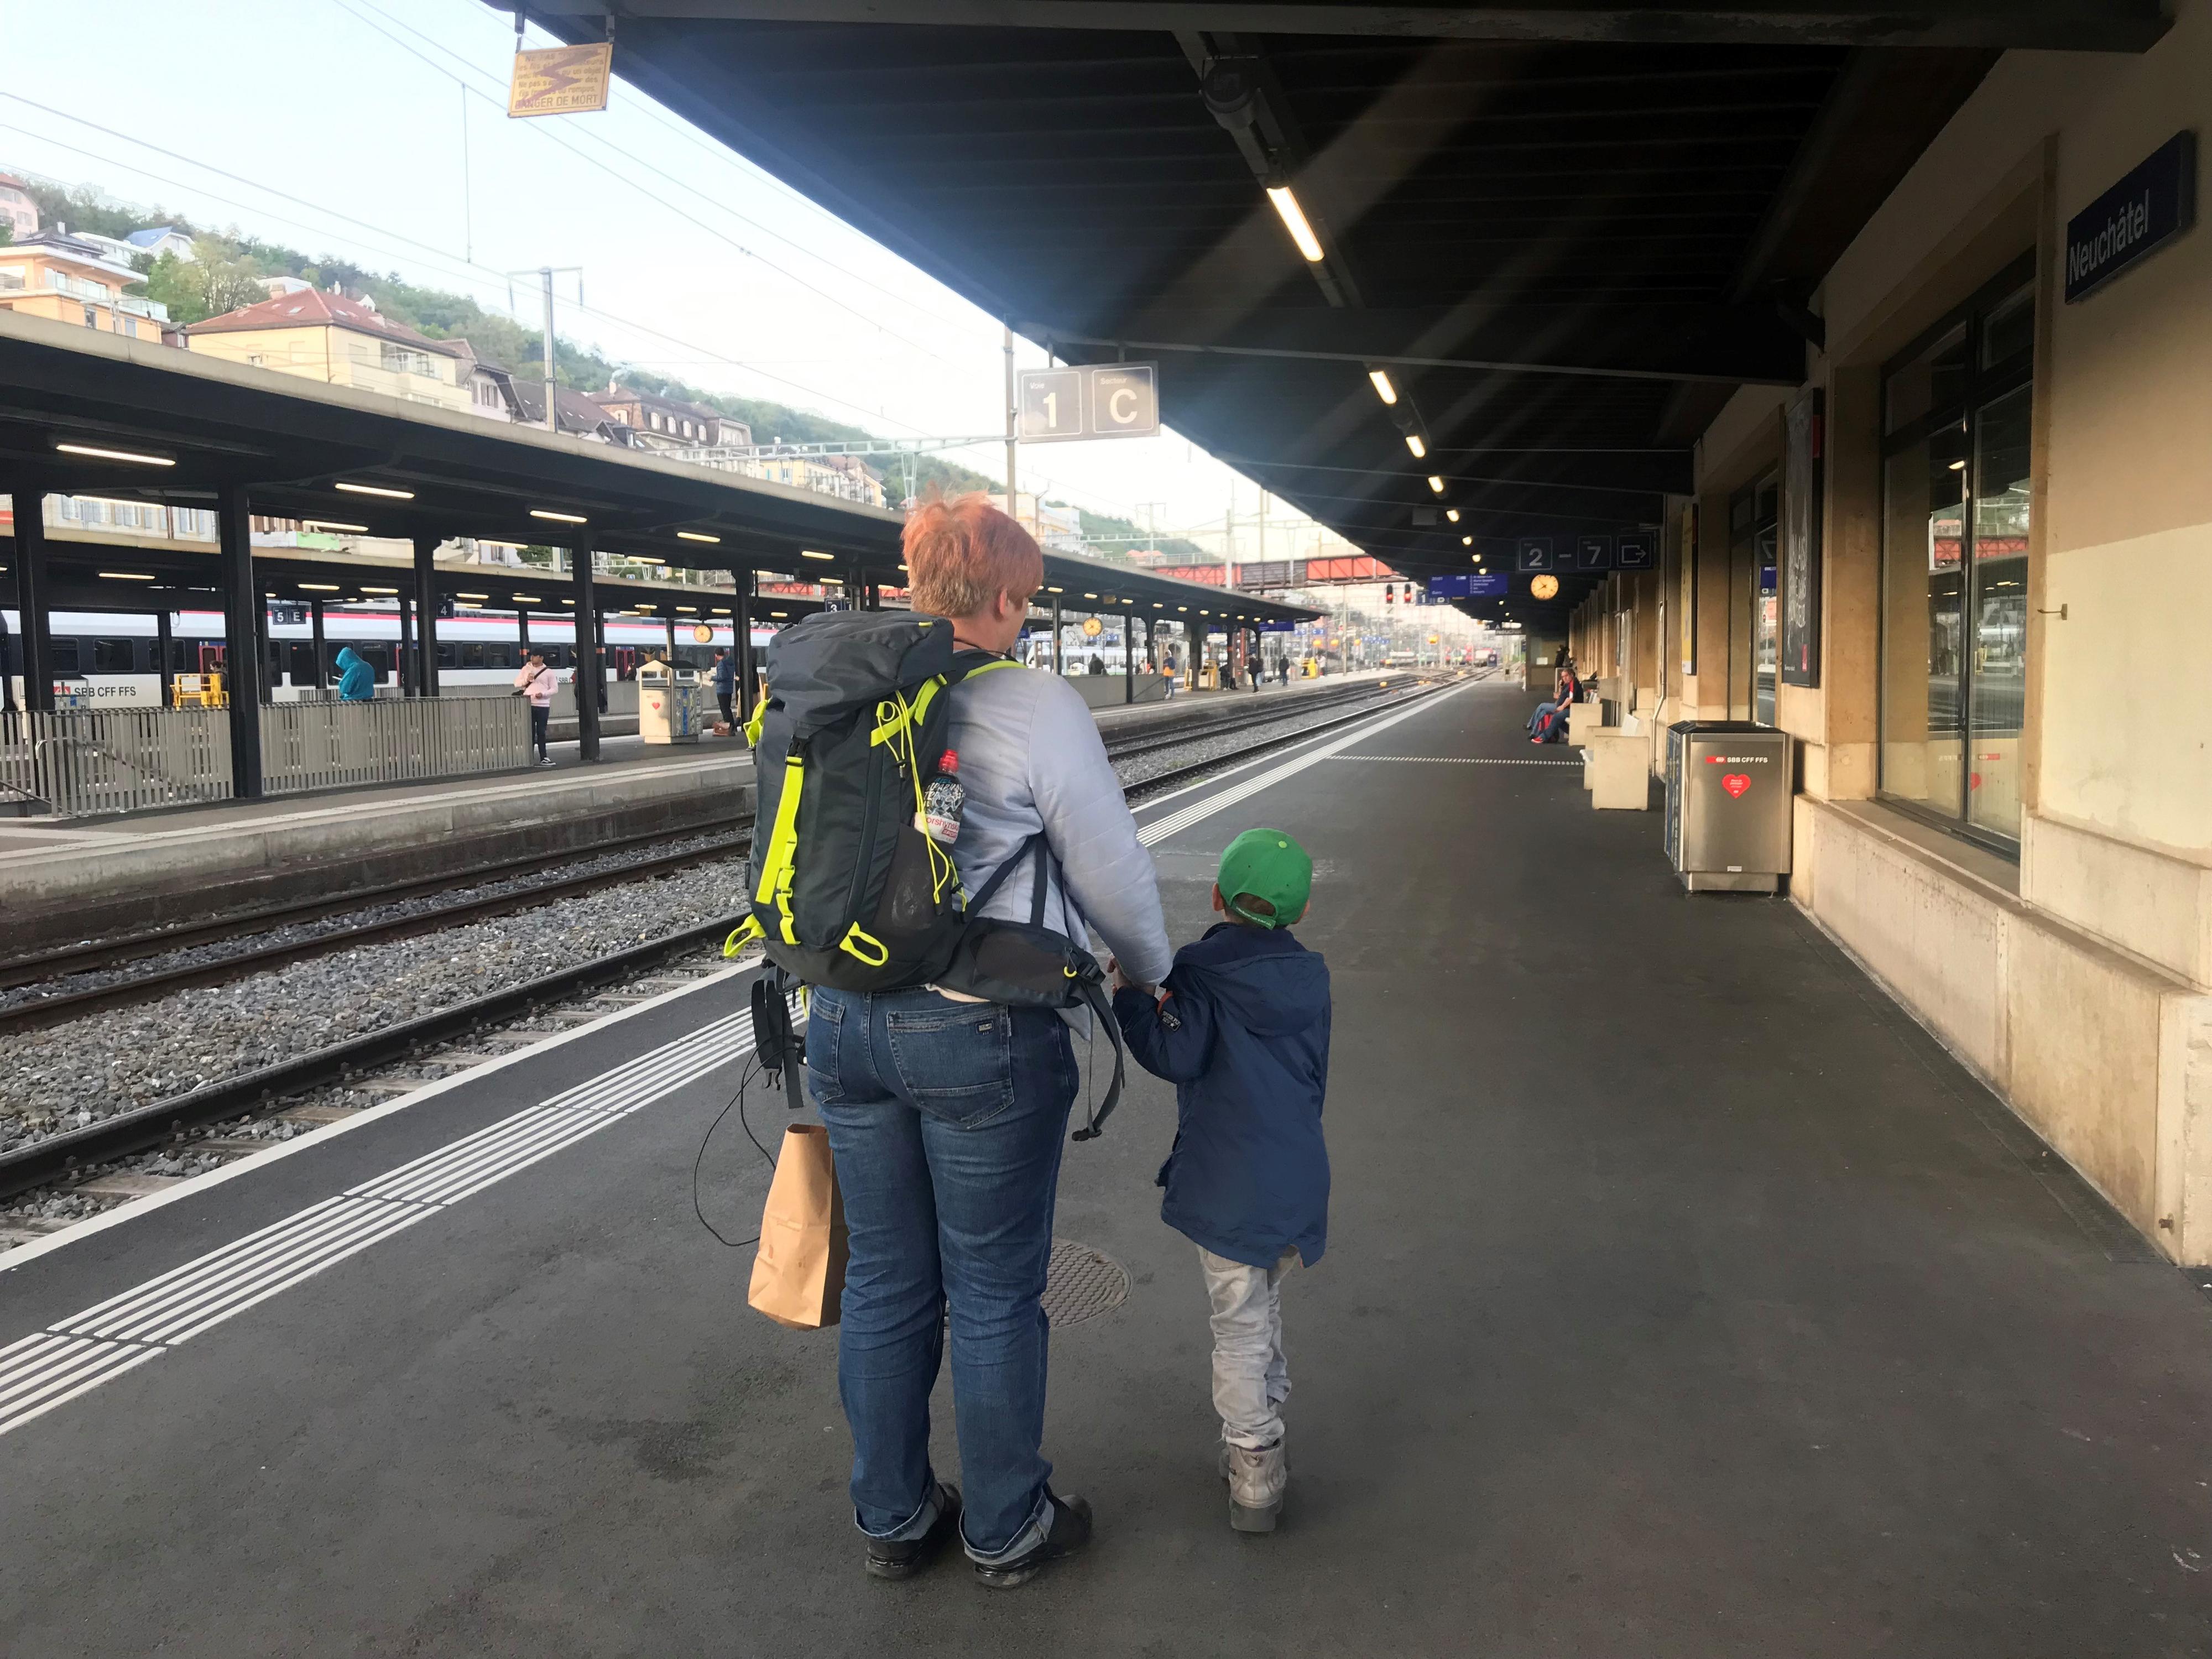 Hanna et son petit garçon ont bénéficié de la solidarité des habitantes et habitants de Neuchâtel, mais son parcours reste extrêmement difficile. [RTS - Ludovic Rocchi]